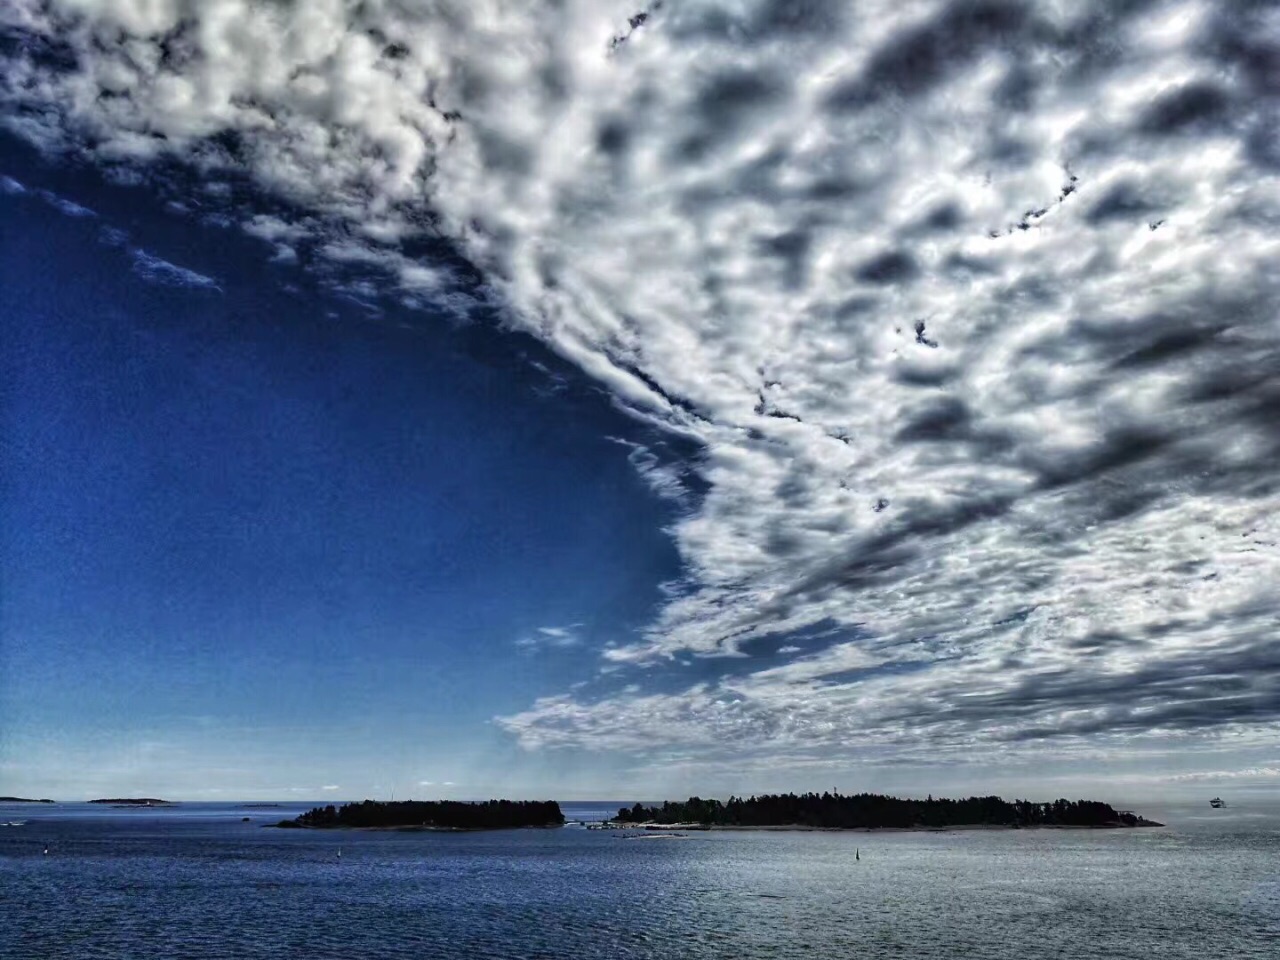 【携程攻略】赫尔辛基波罗的海芬兰湾景点,芬兰湾打卡 沉醉于北欧的观影交织，爱上芬兰的宁静美丽。海湾旁看日…